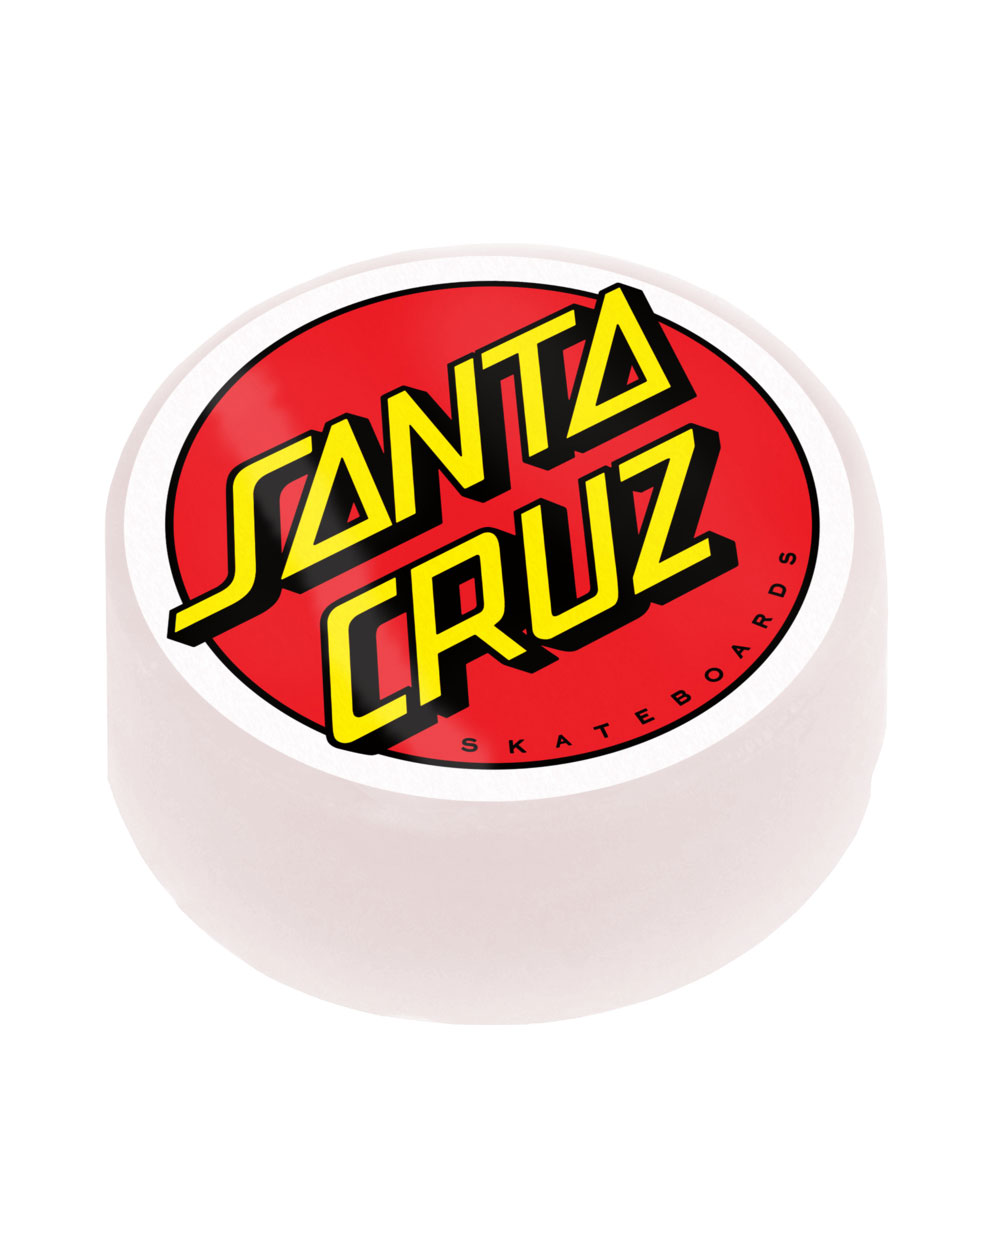 Santa Cruz Cera Skateboard Classic Dot